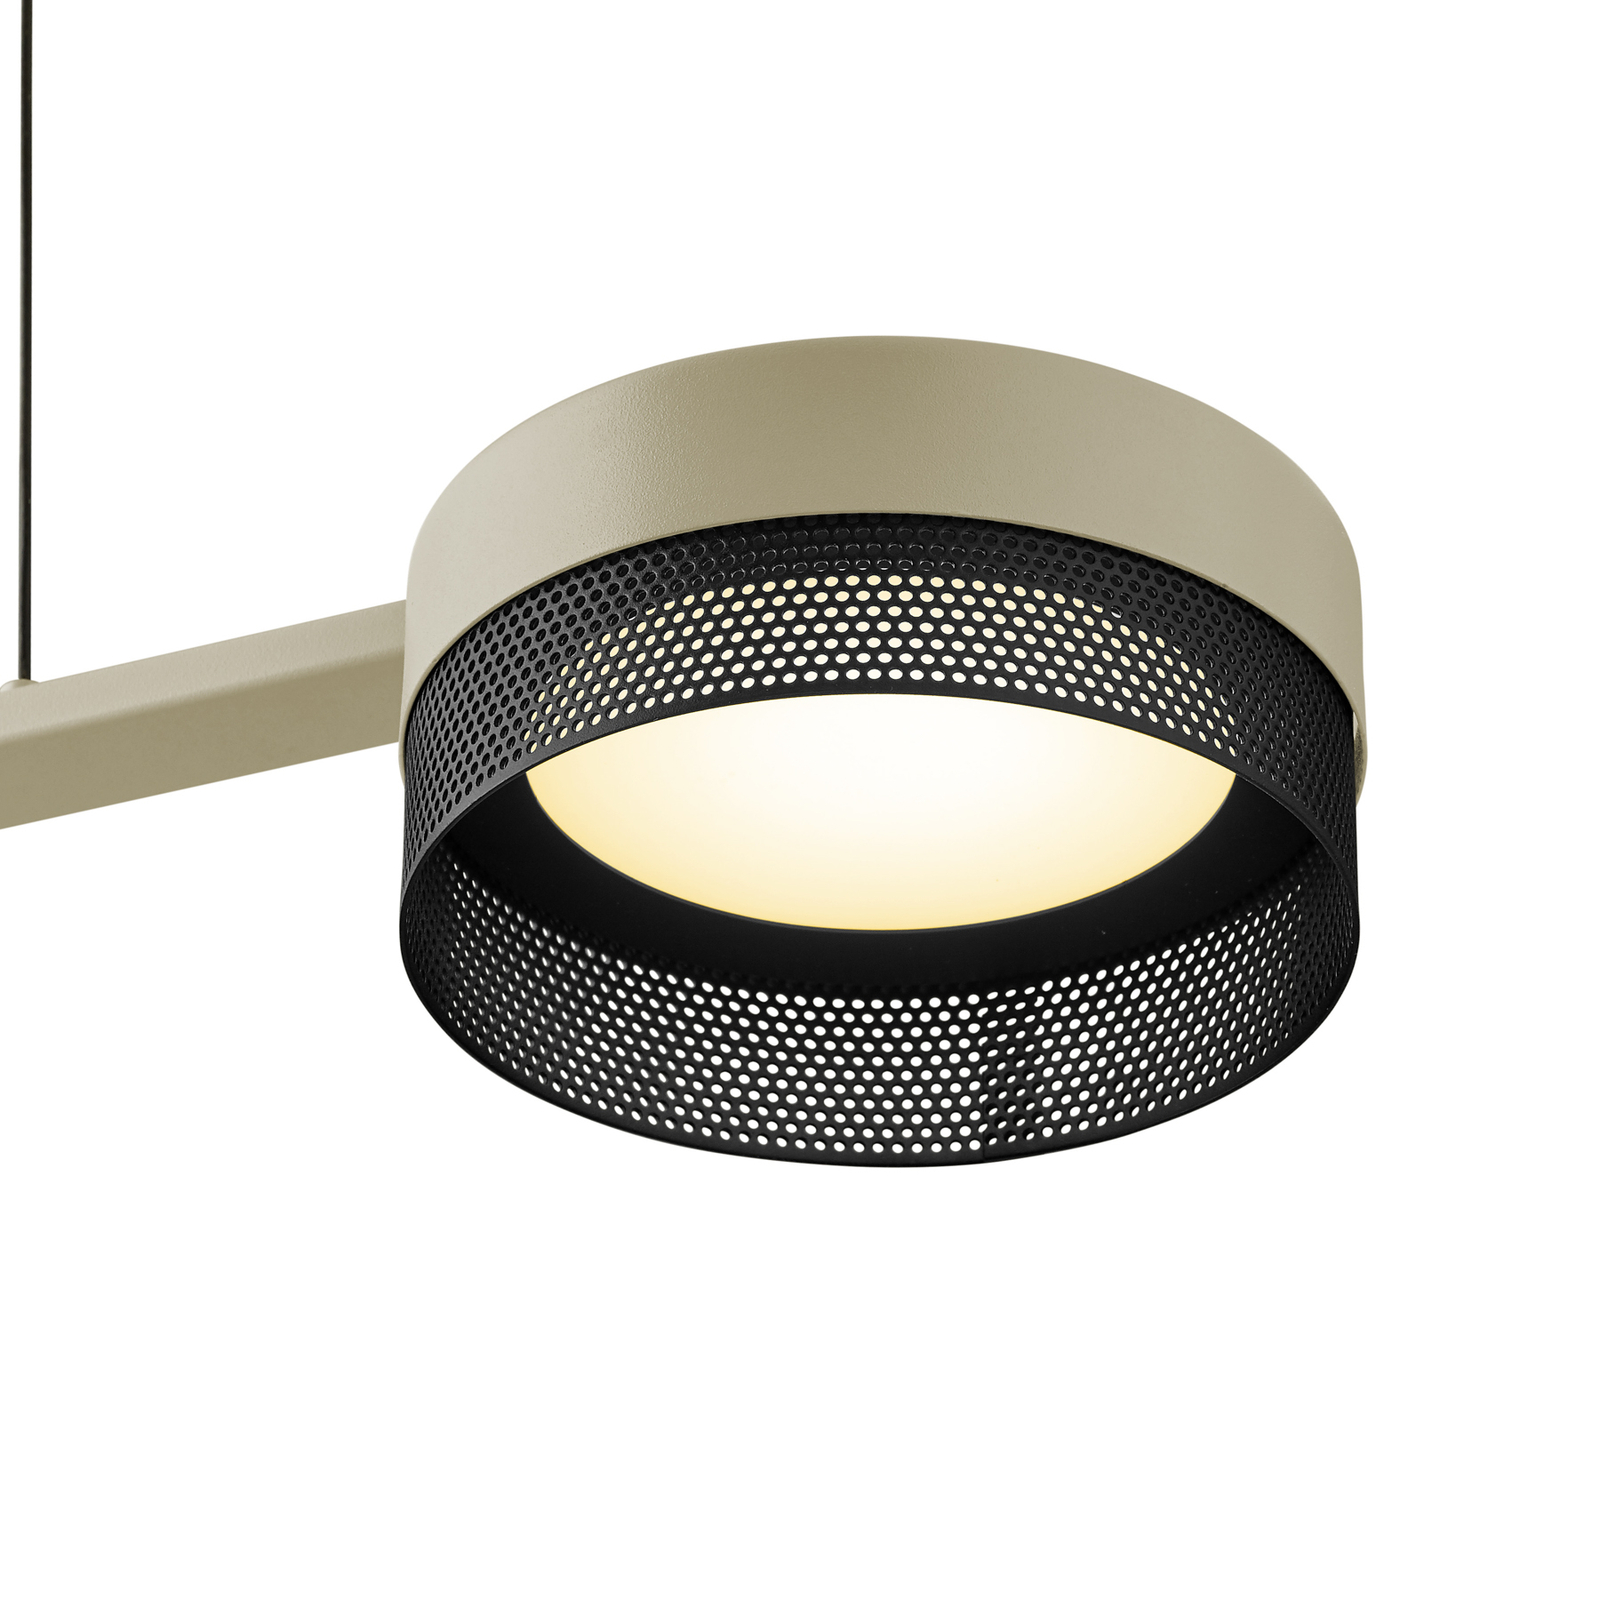 Mesh LED pendant light 3-bulb dimmer, sand/black